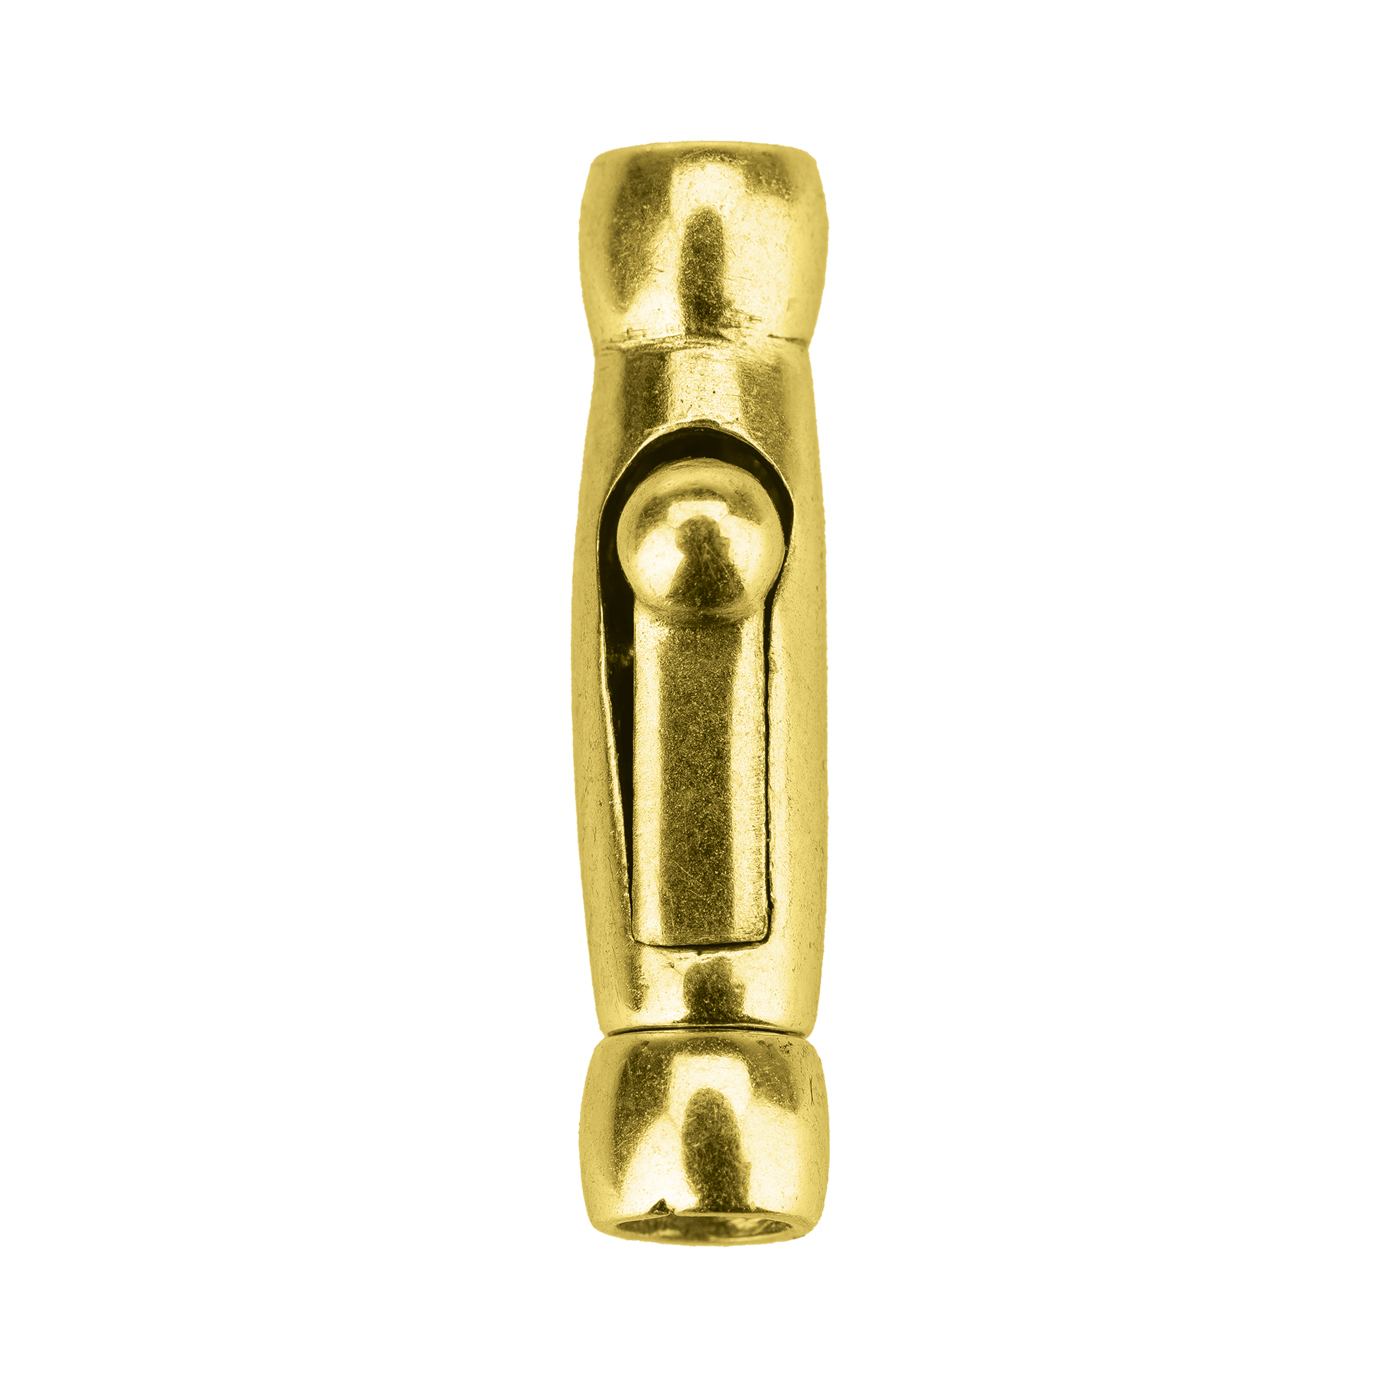 Krokodilverschluss, 925 Ag vergoldet, Innen-ø 2,5 mm - 1 Stück